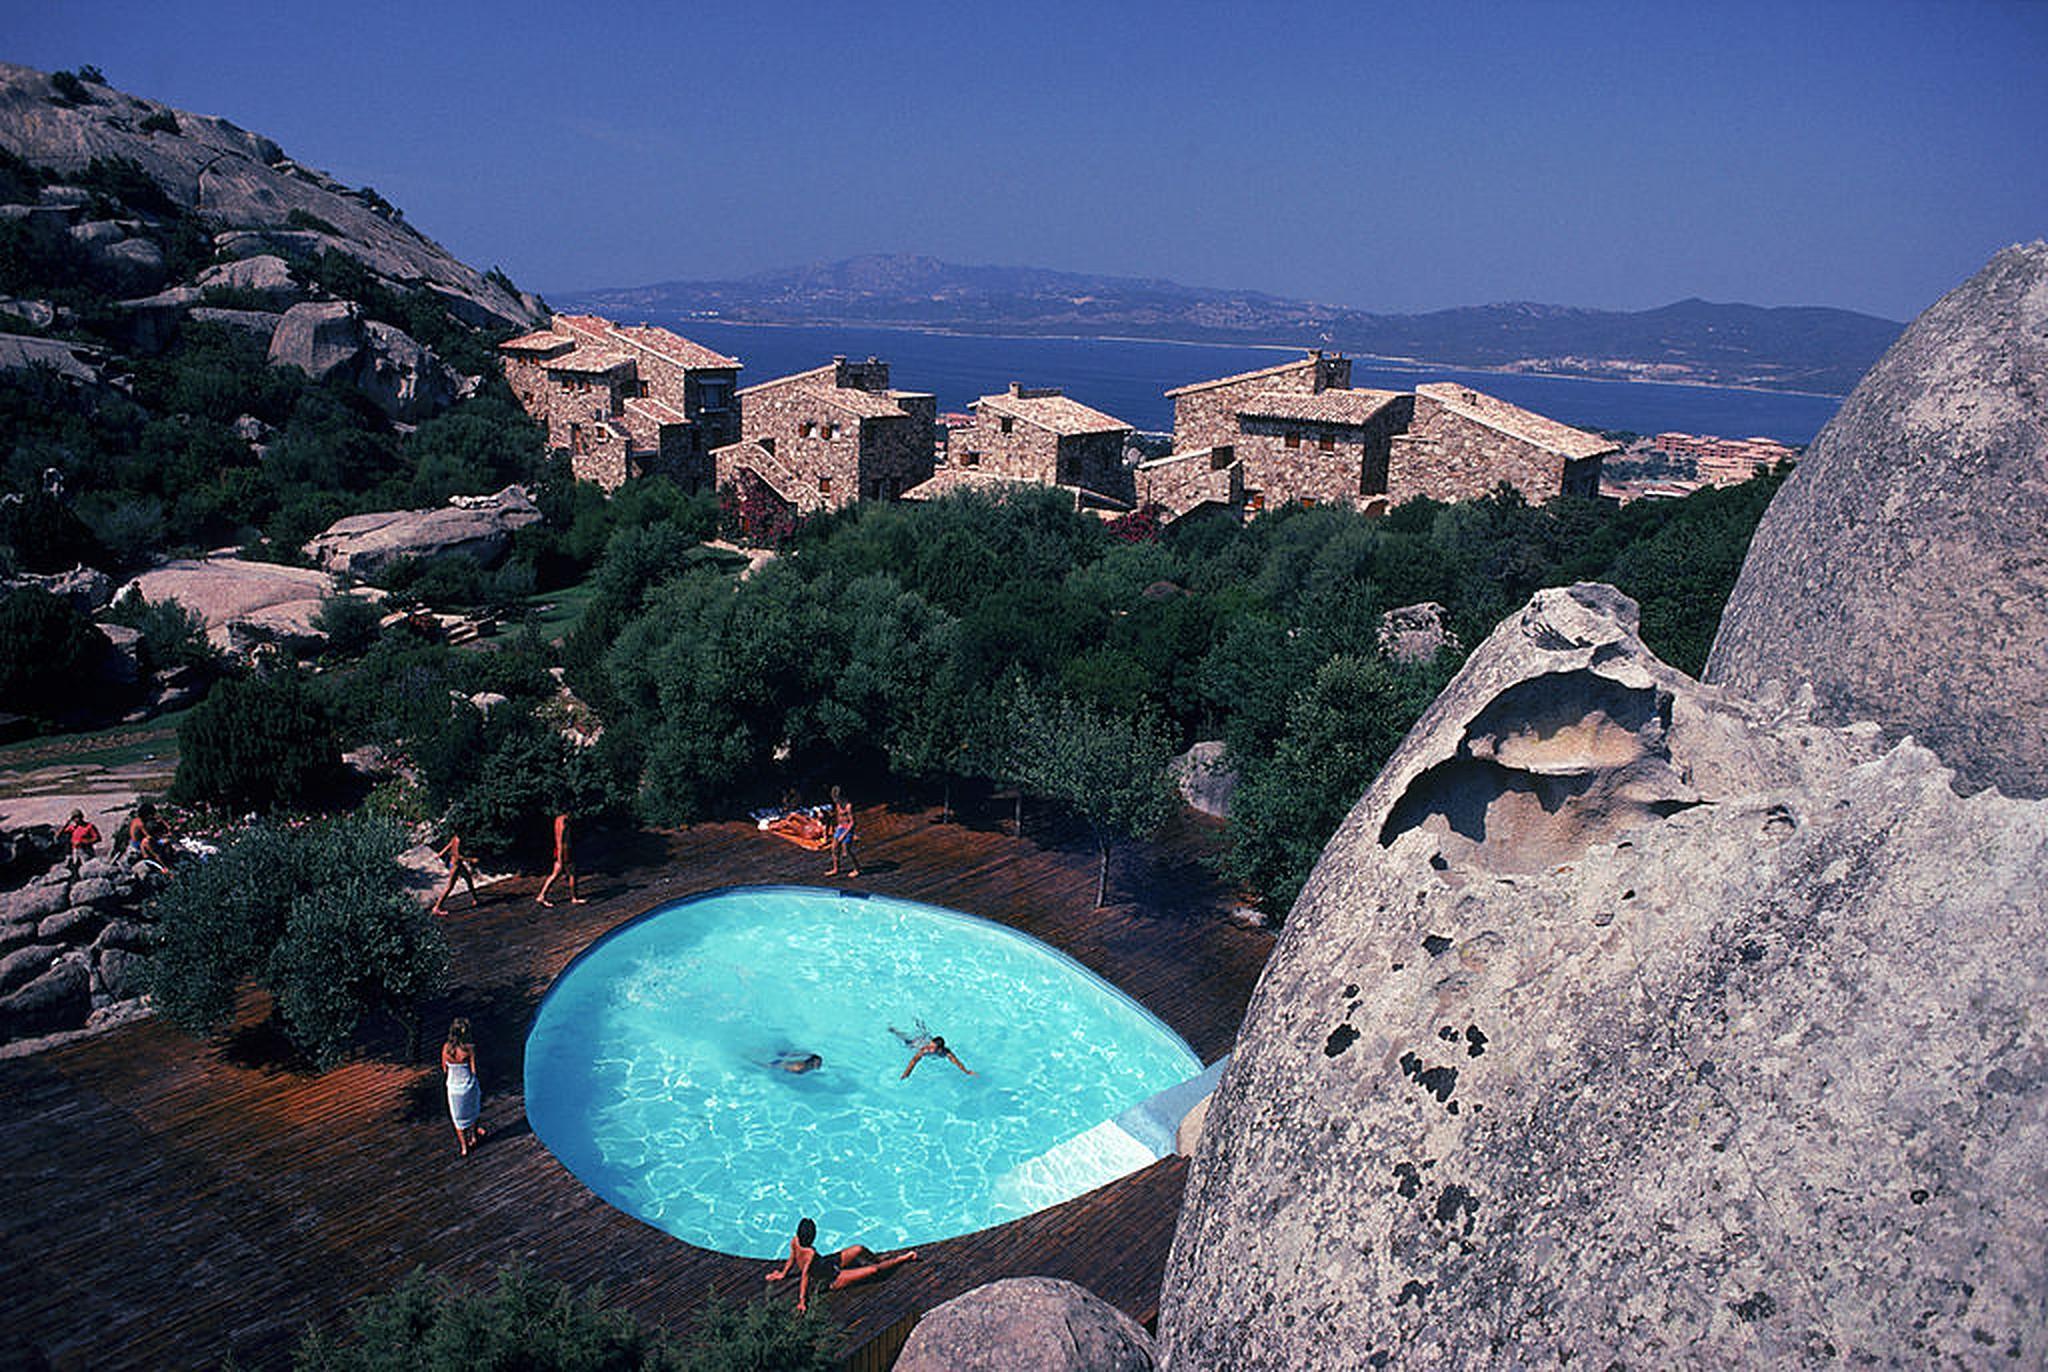 Pool at Porto Rotondo, Sardinia, Italy, August 1982 by Slim Aarons